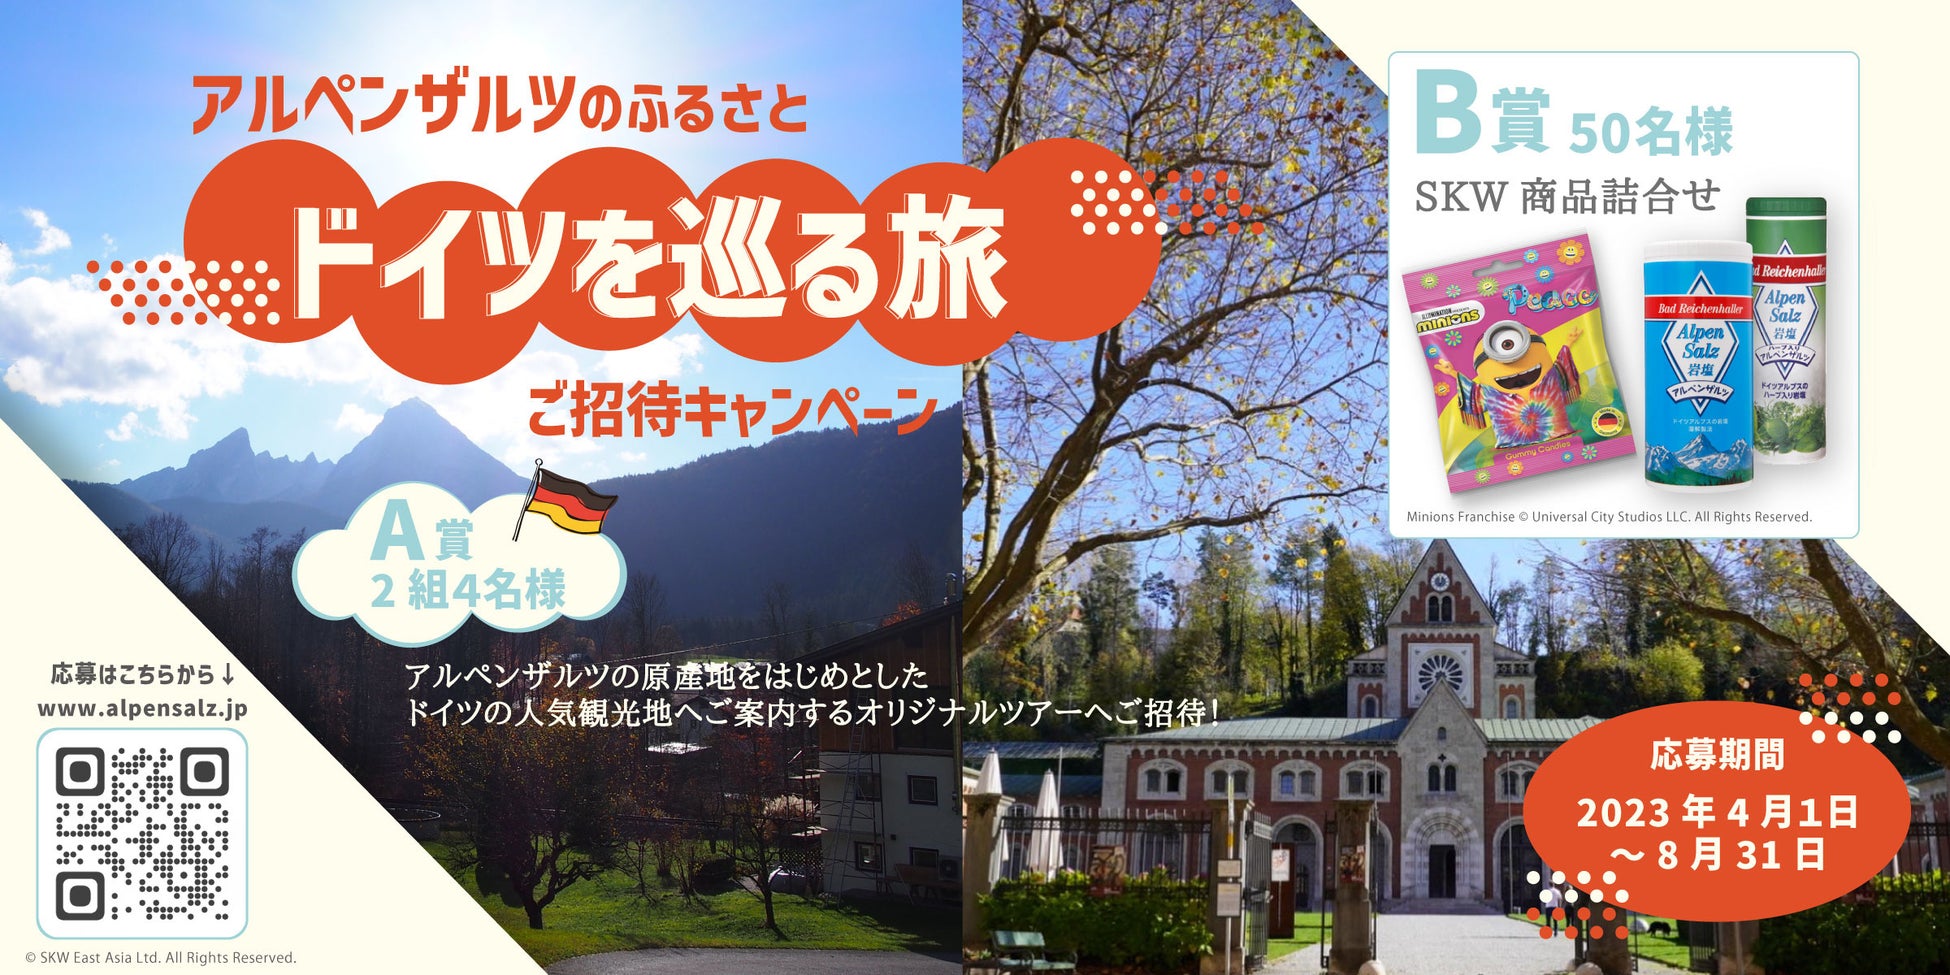 2025年までに関西２府４県にお菓子のテーマパークを開業します